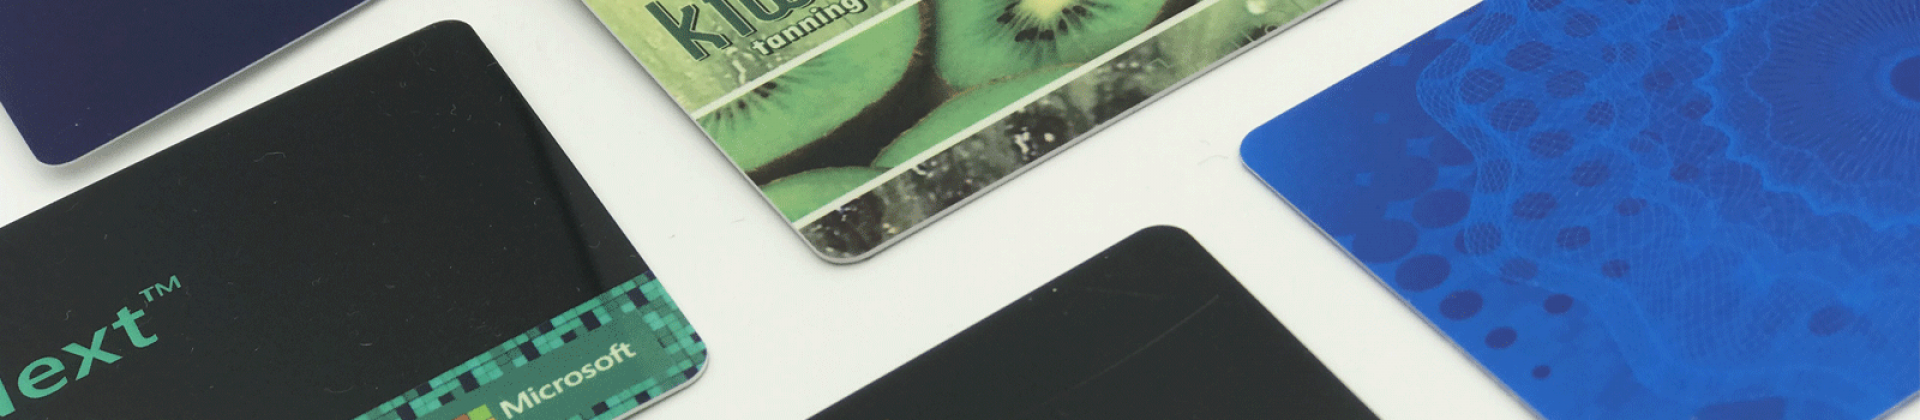 (PF-T-05) Flip design card cases